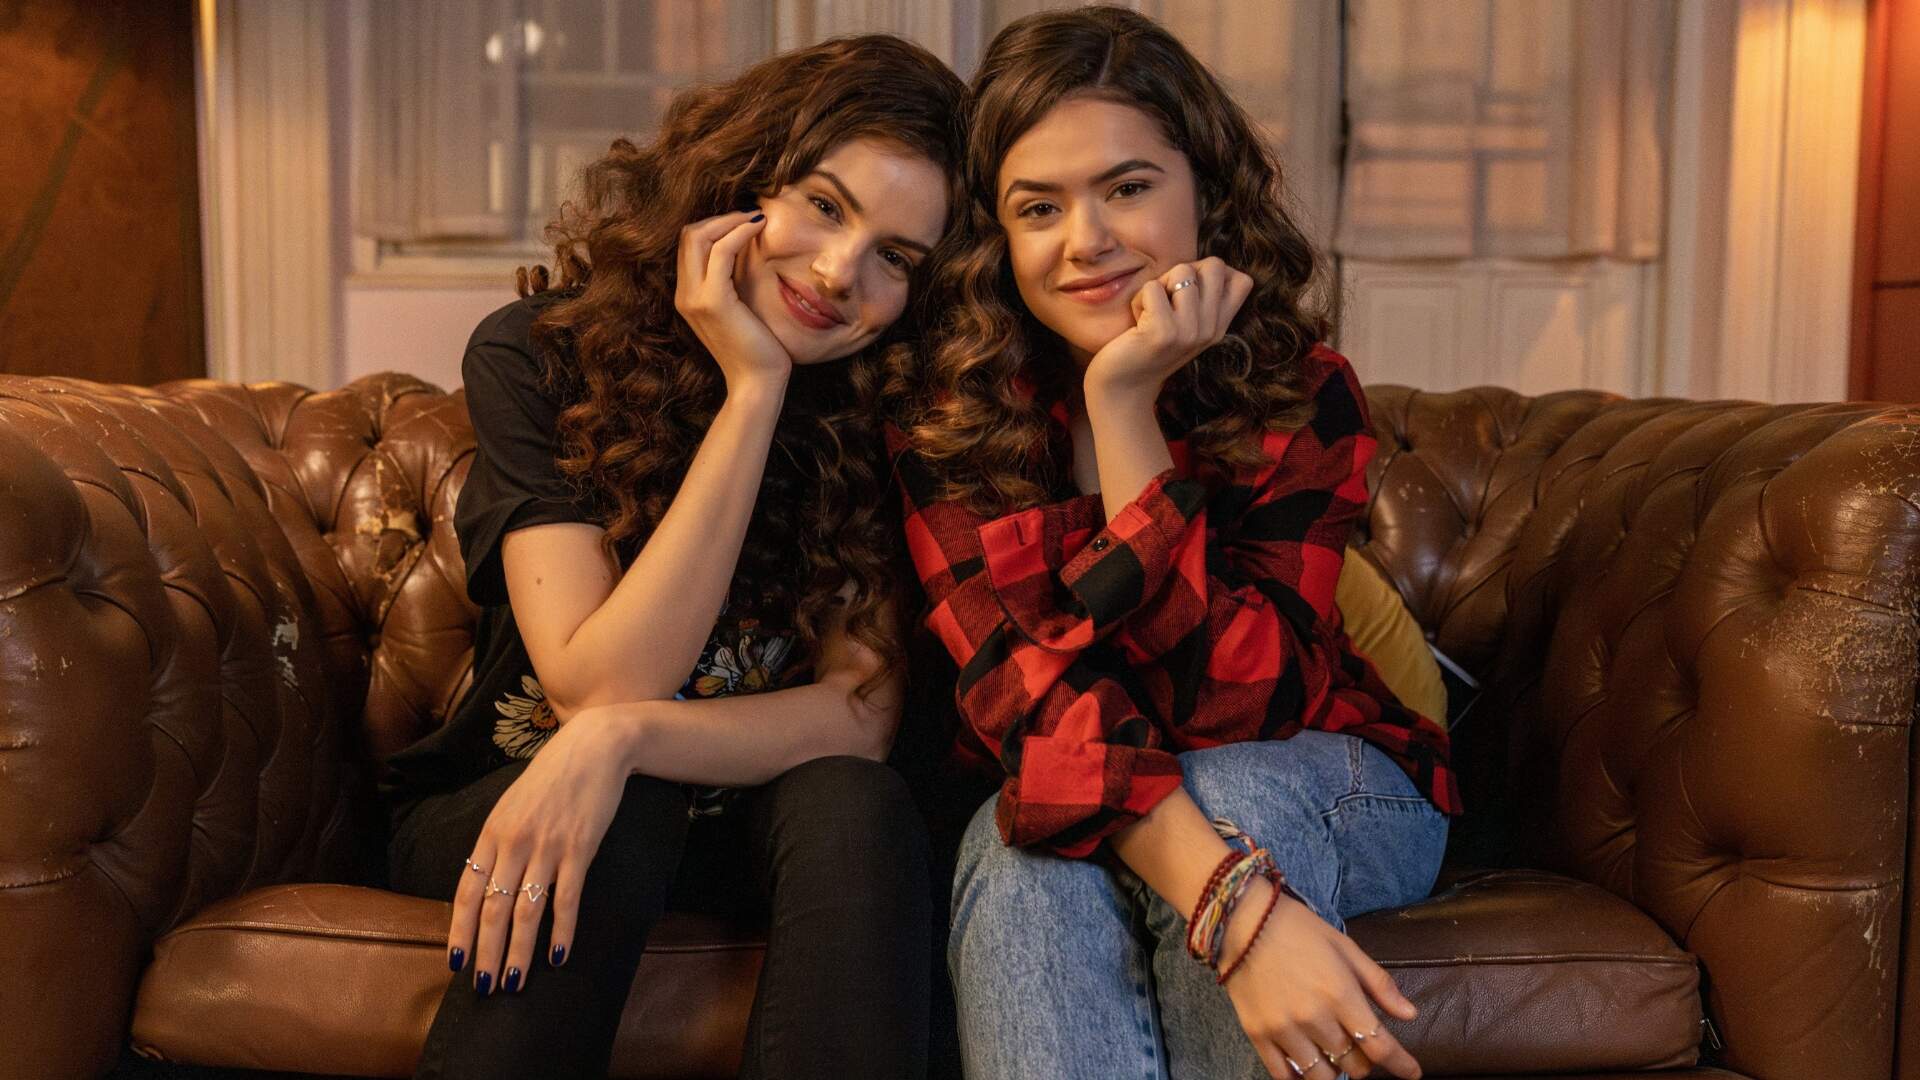 De Volta aos 15: Maísa e Camila Queiroz são destaque em imagens da segunda temporada - Metropolitana FM